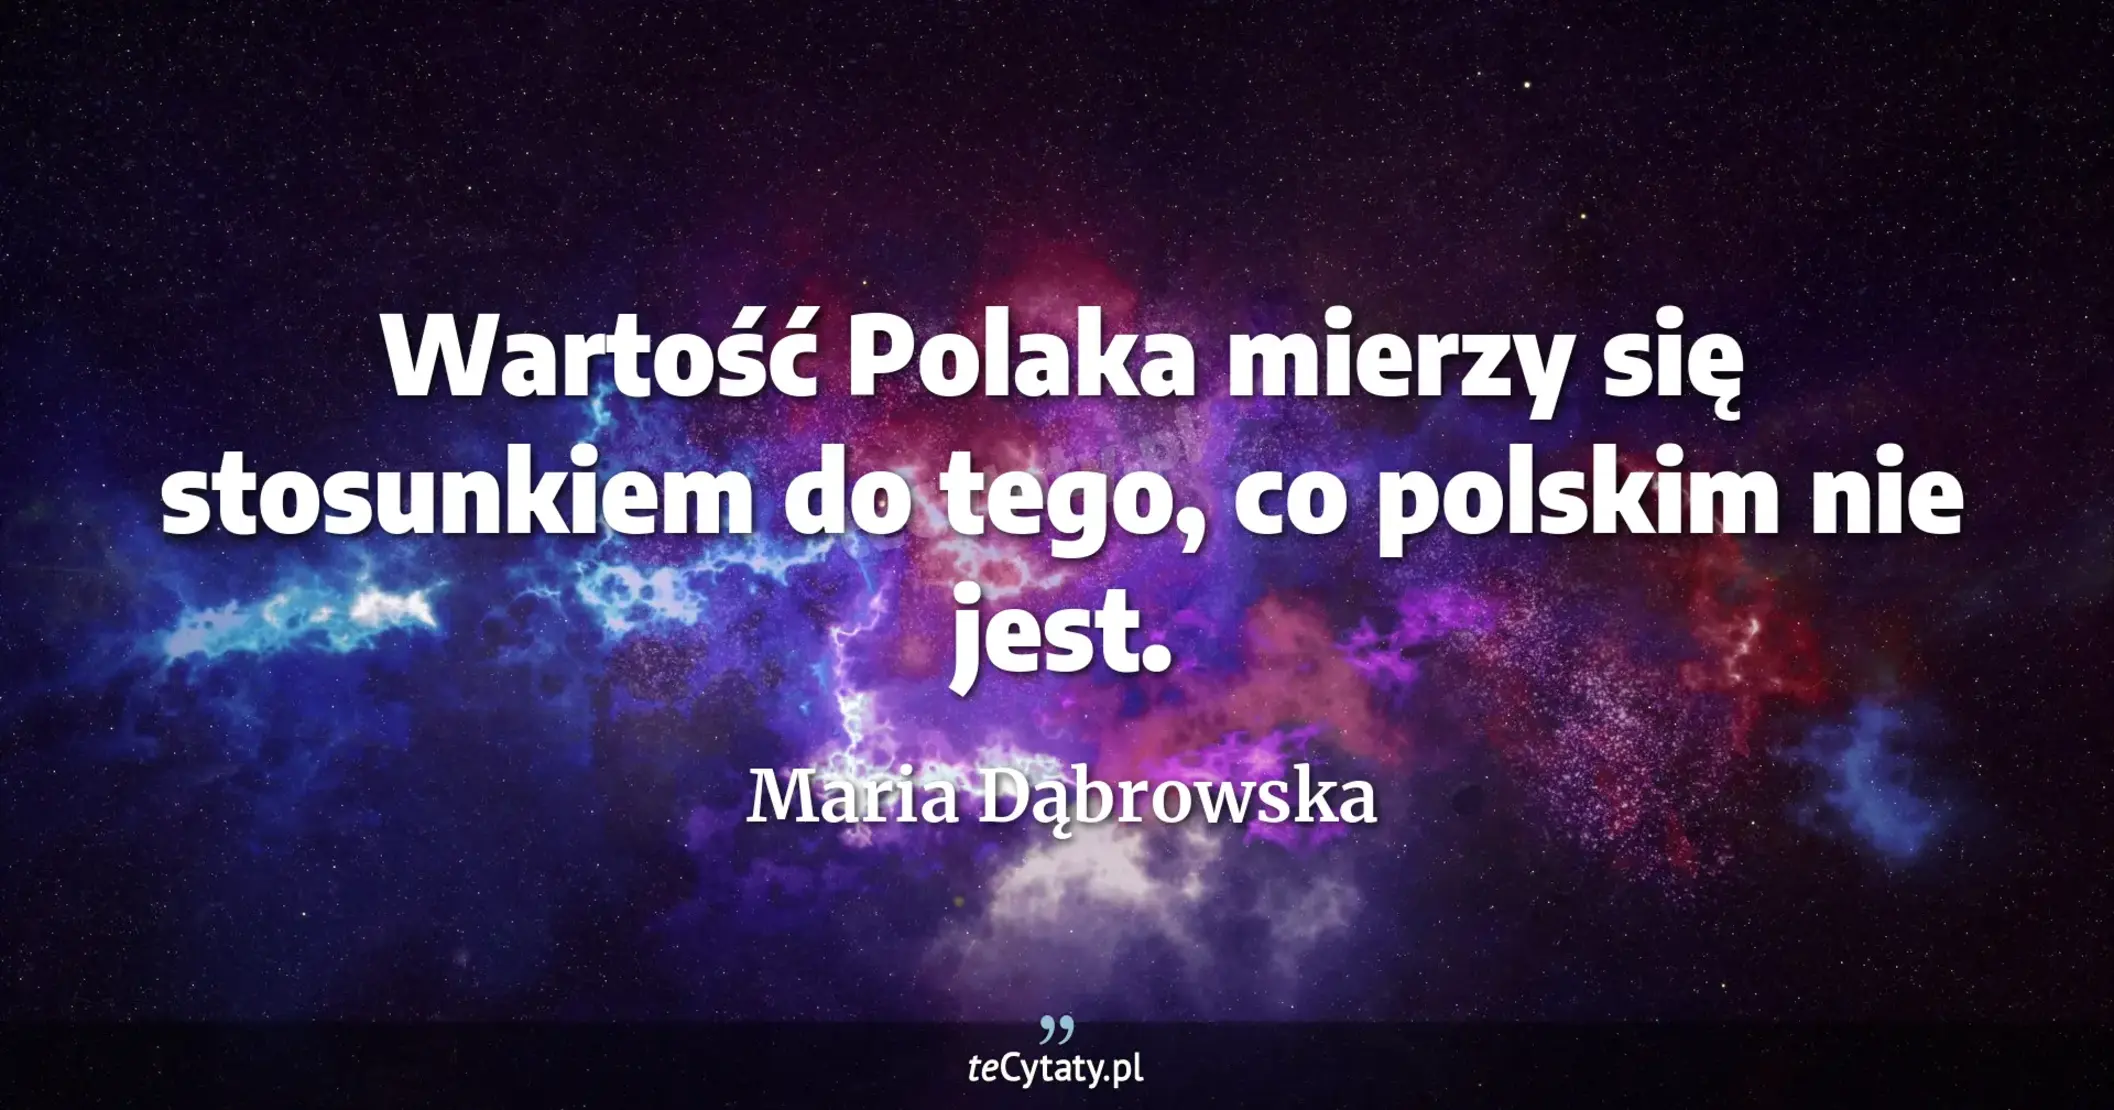 Wartość Polaka mierzy się stosunkiem do tego, co polskim nie jest. - Maria Dąbrowska